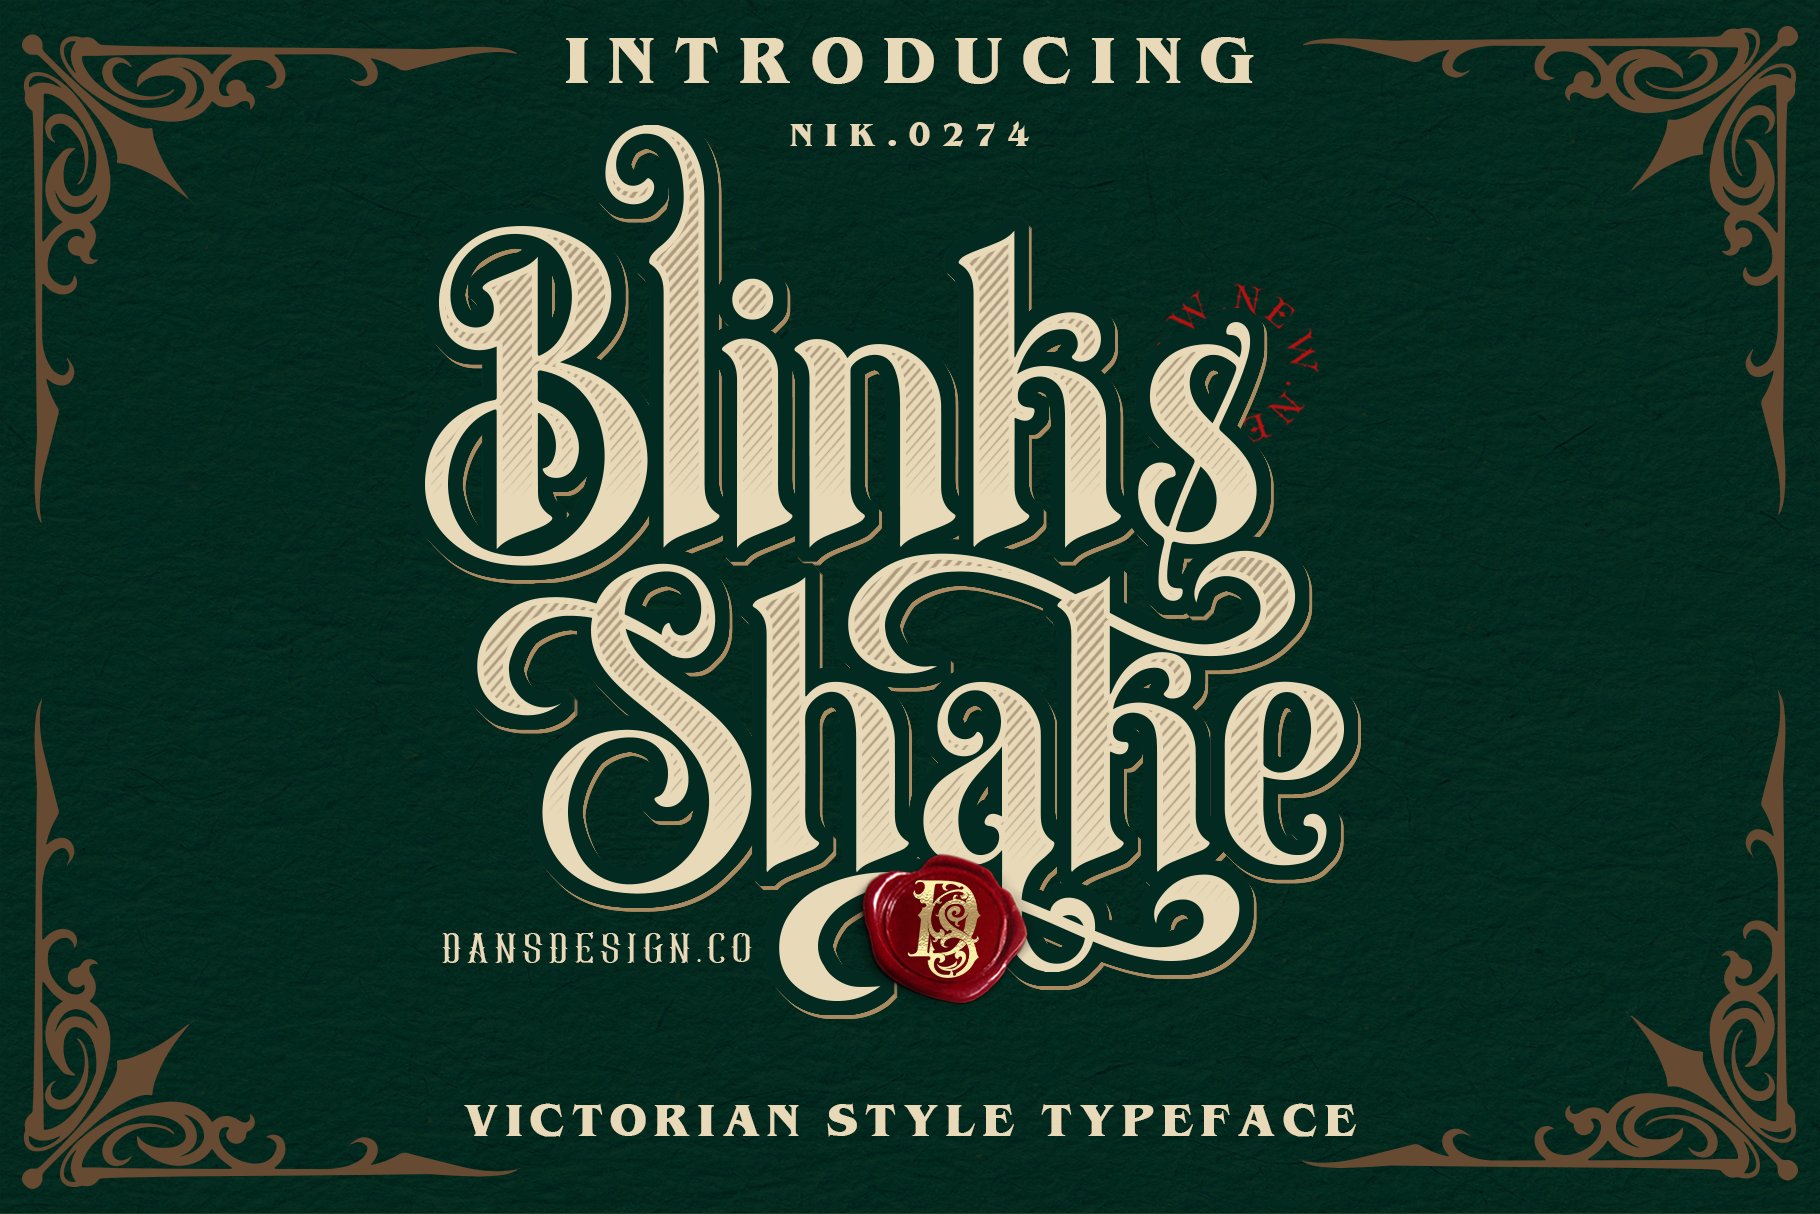 Blinks Shake cover image.